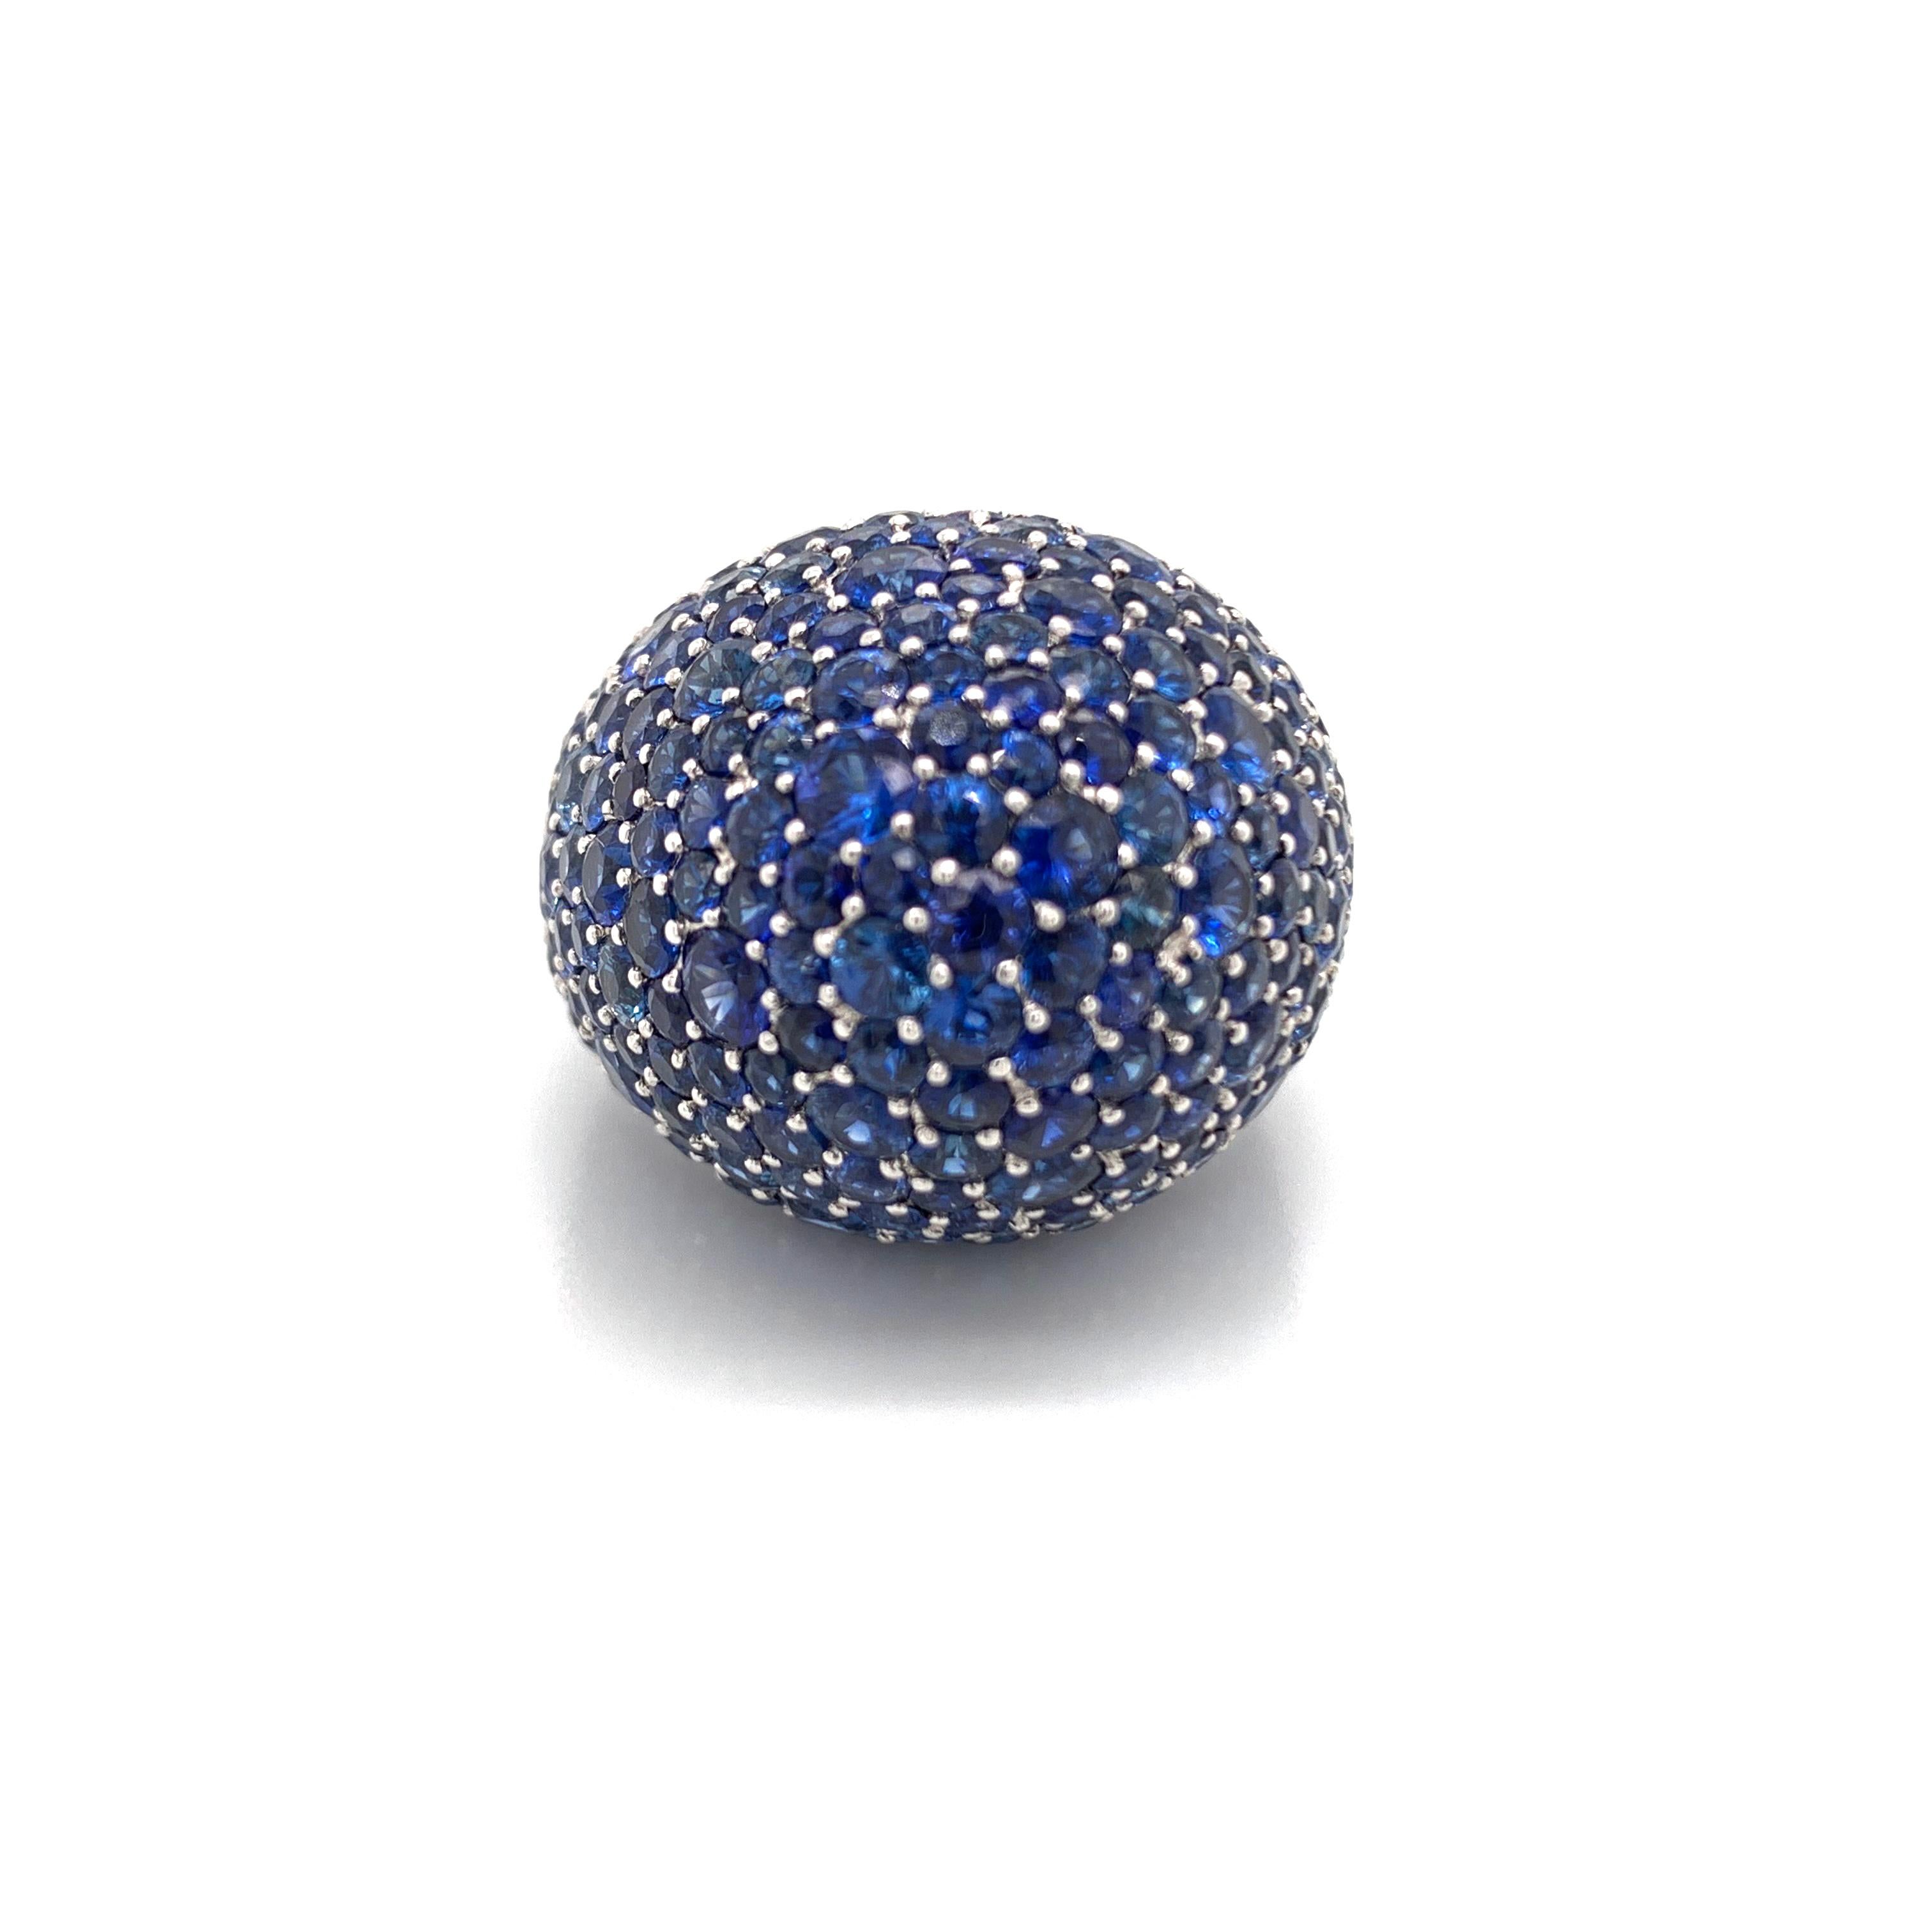 Ein wunderschön gearbeiteter Kuppelring aus blauem Saphir. In einem 18kt Weißgold poliert beenden diese schöne Kuppel Ring wiegen 21,2 Gramm und ist ein US-Ring Größe 6,5. Bedeckt, in 17,74cts der schönen runden blauen Saphiren. Der Ring ist